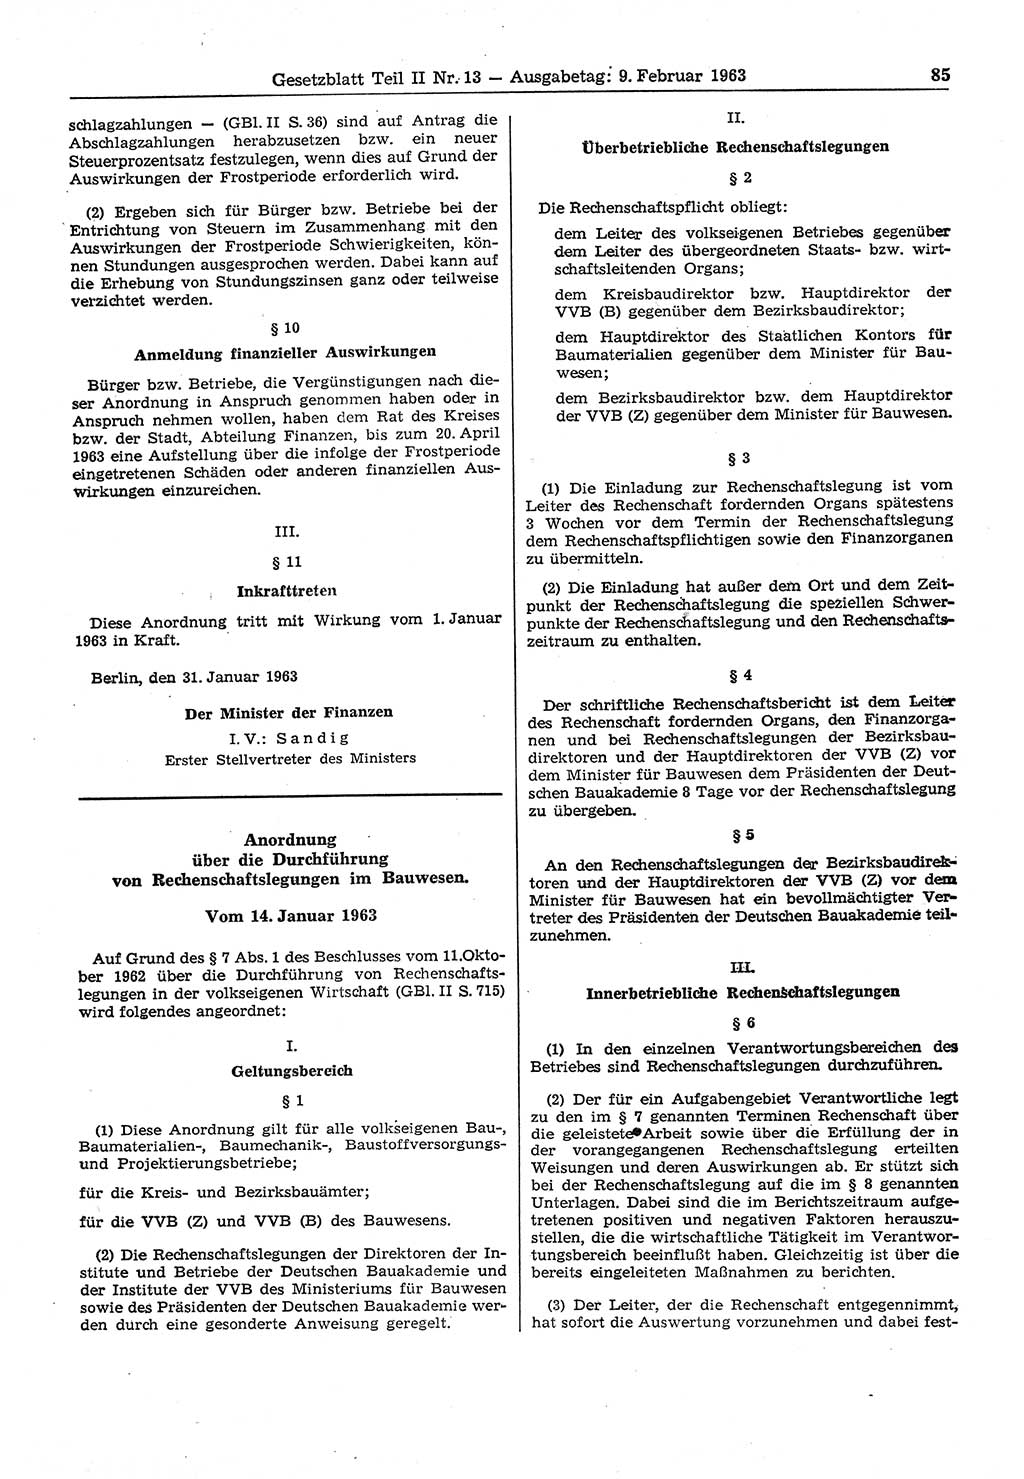 Gesetzblatt (GBl.) der Deutschen Demokratischen Republik (DDR) Teil ⅠⅠ 1963, Seite 85 (GBl. DDR ⅠⅠ 1963, S. 85)